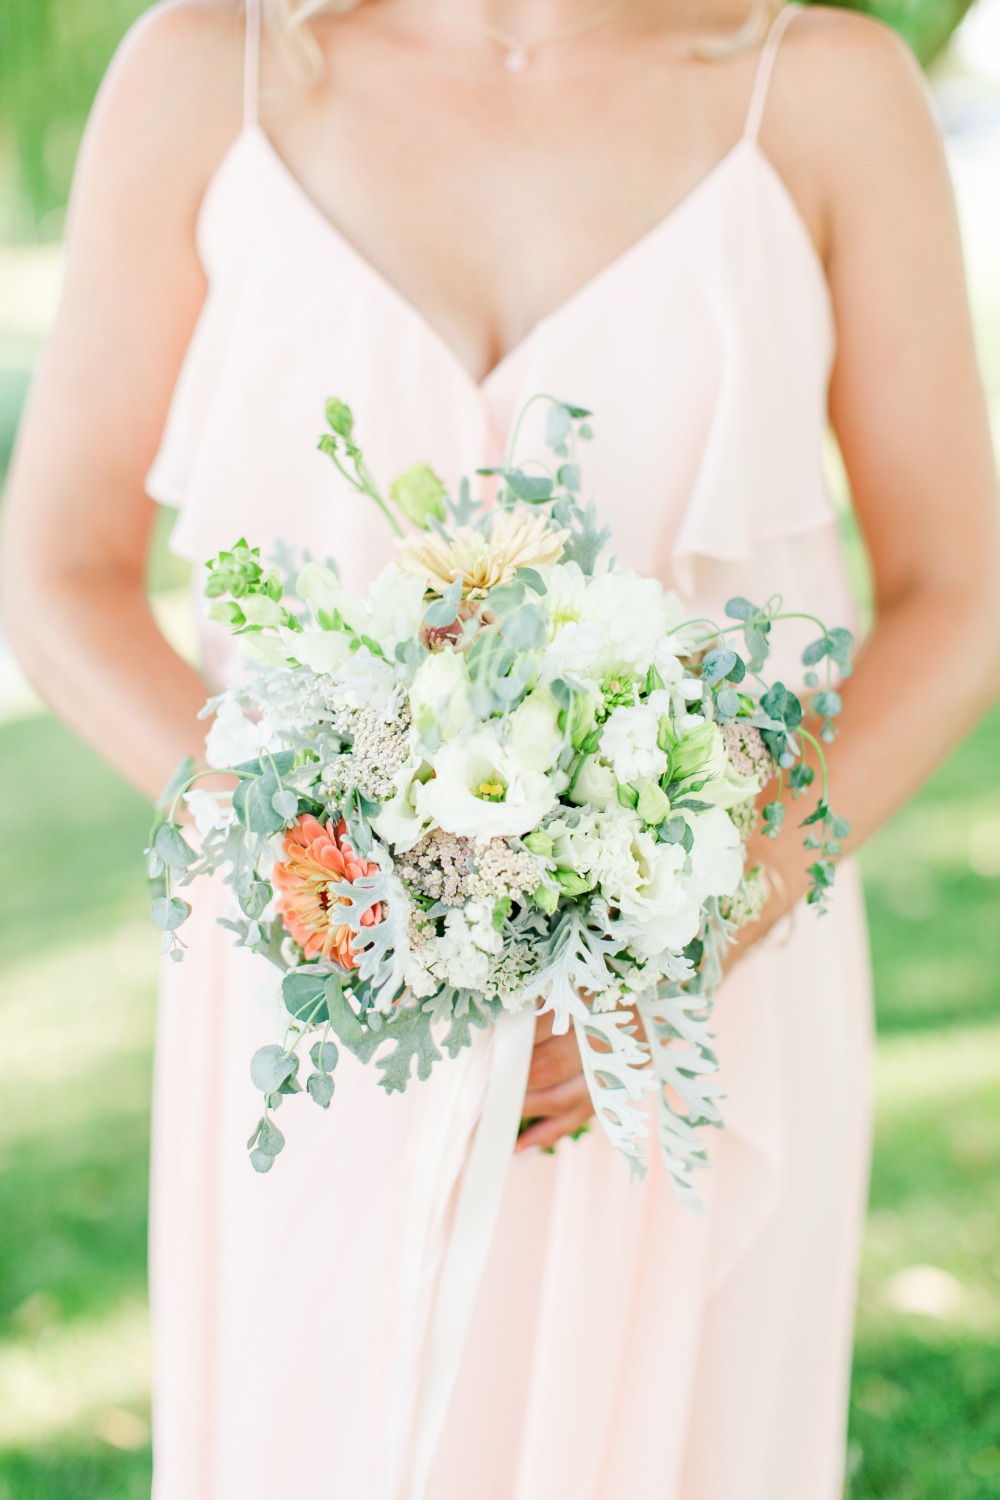 Pretty bridesmaid bouquet